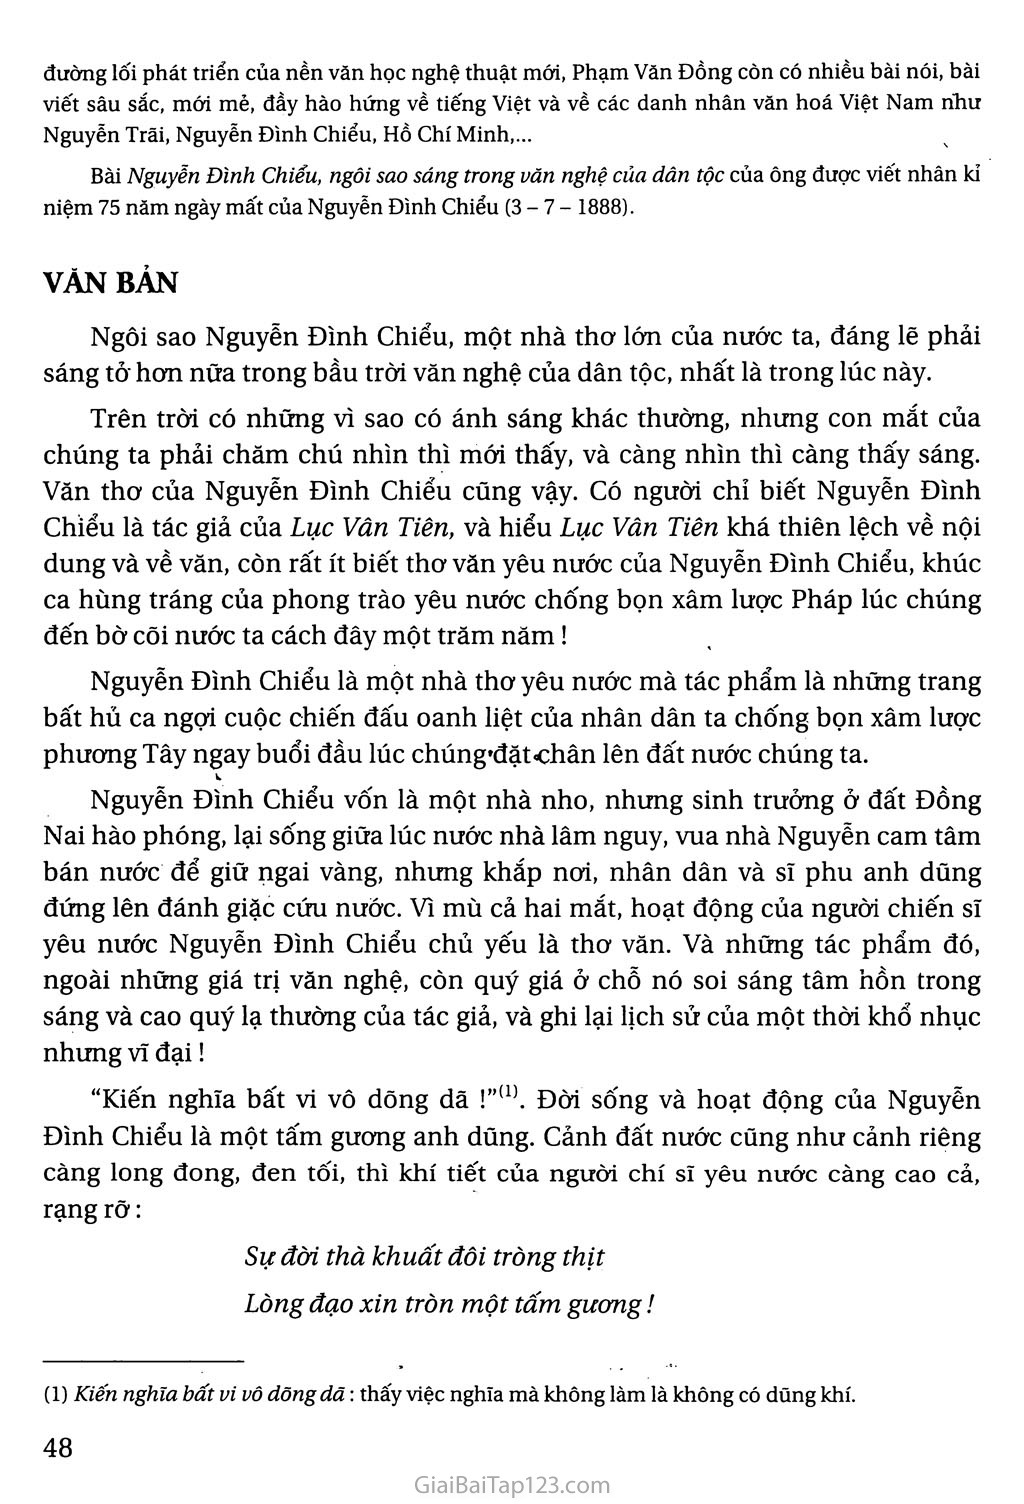 Nguyễn Đình Chiểu, ngôi sao sáng trong văn nghệ của dân tộc trang 2